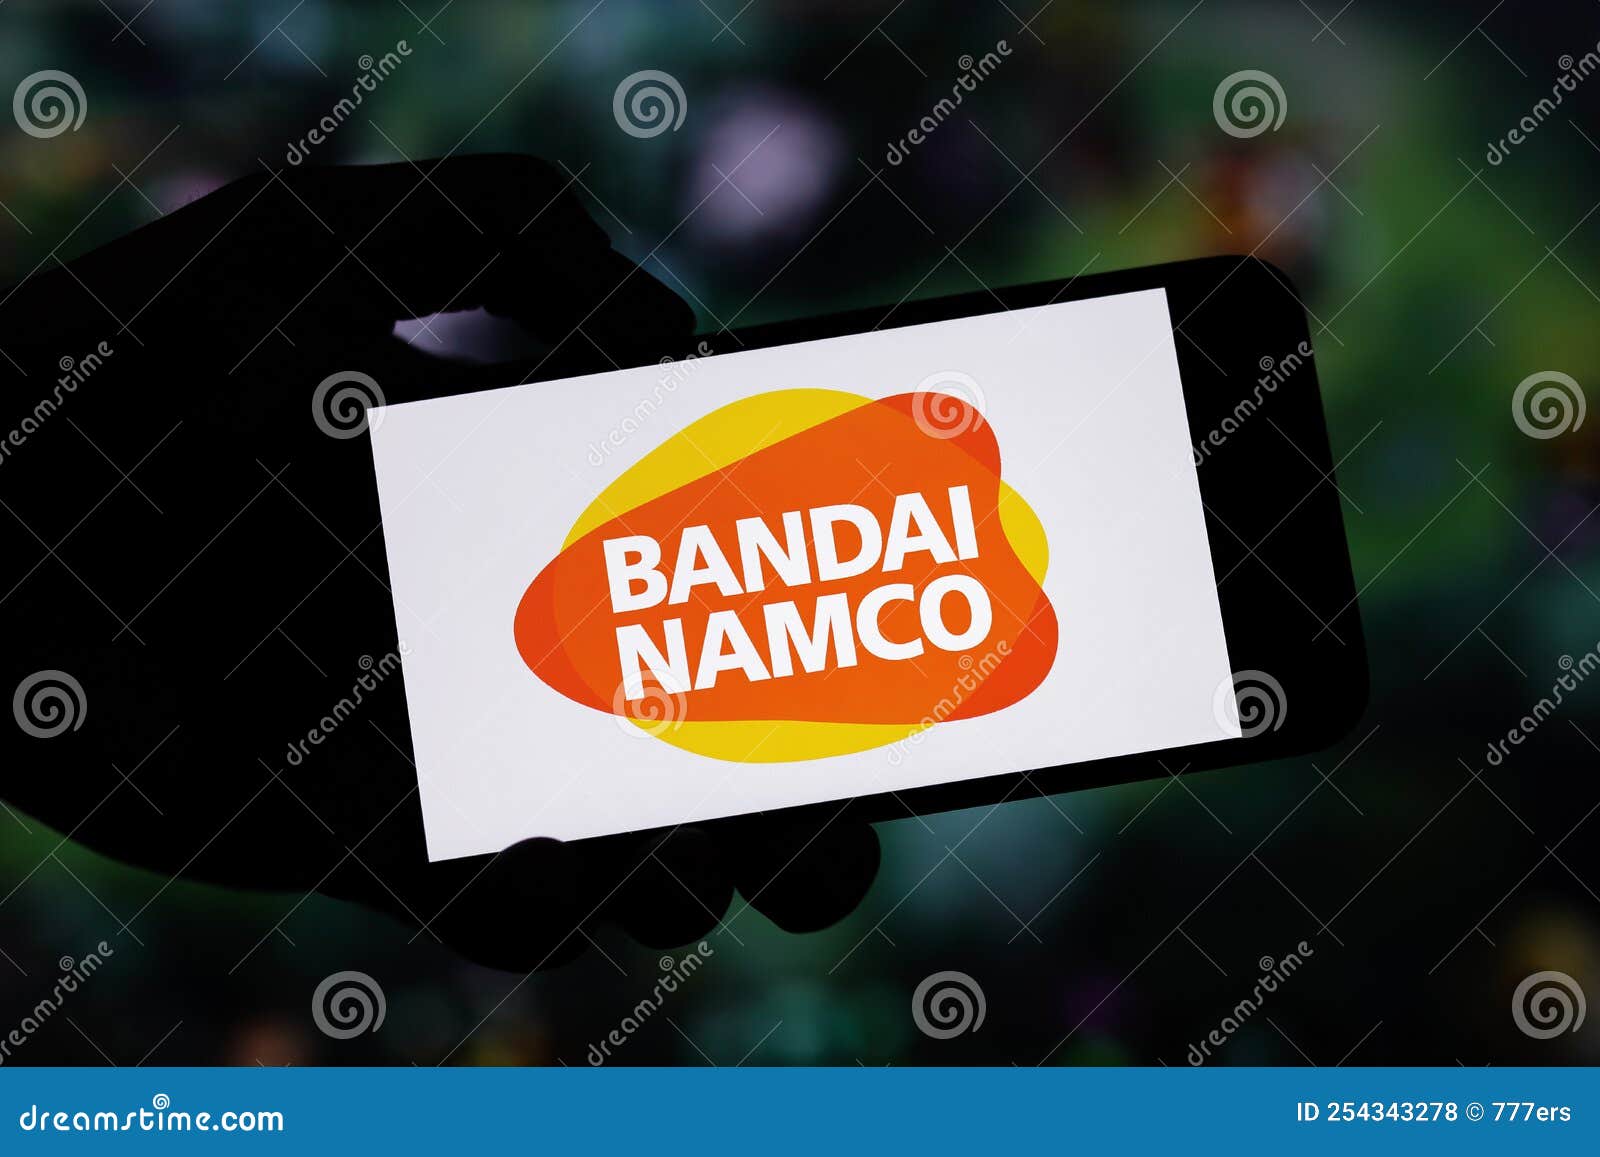 Notícias sobre a Bandai Namco